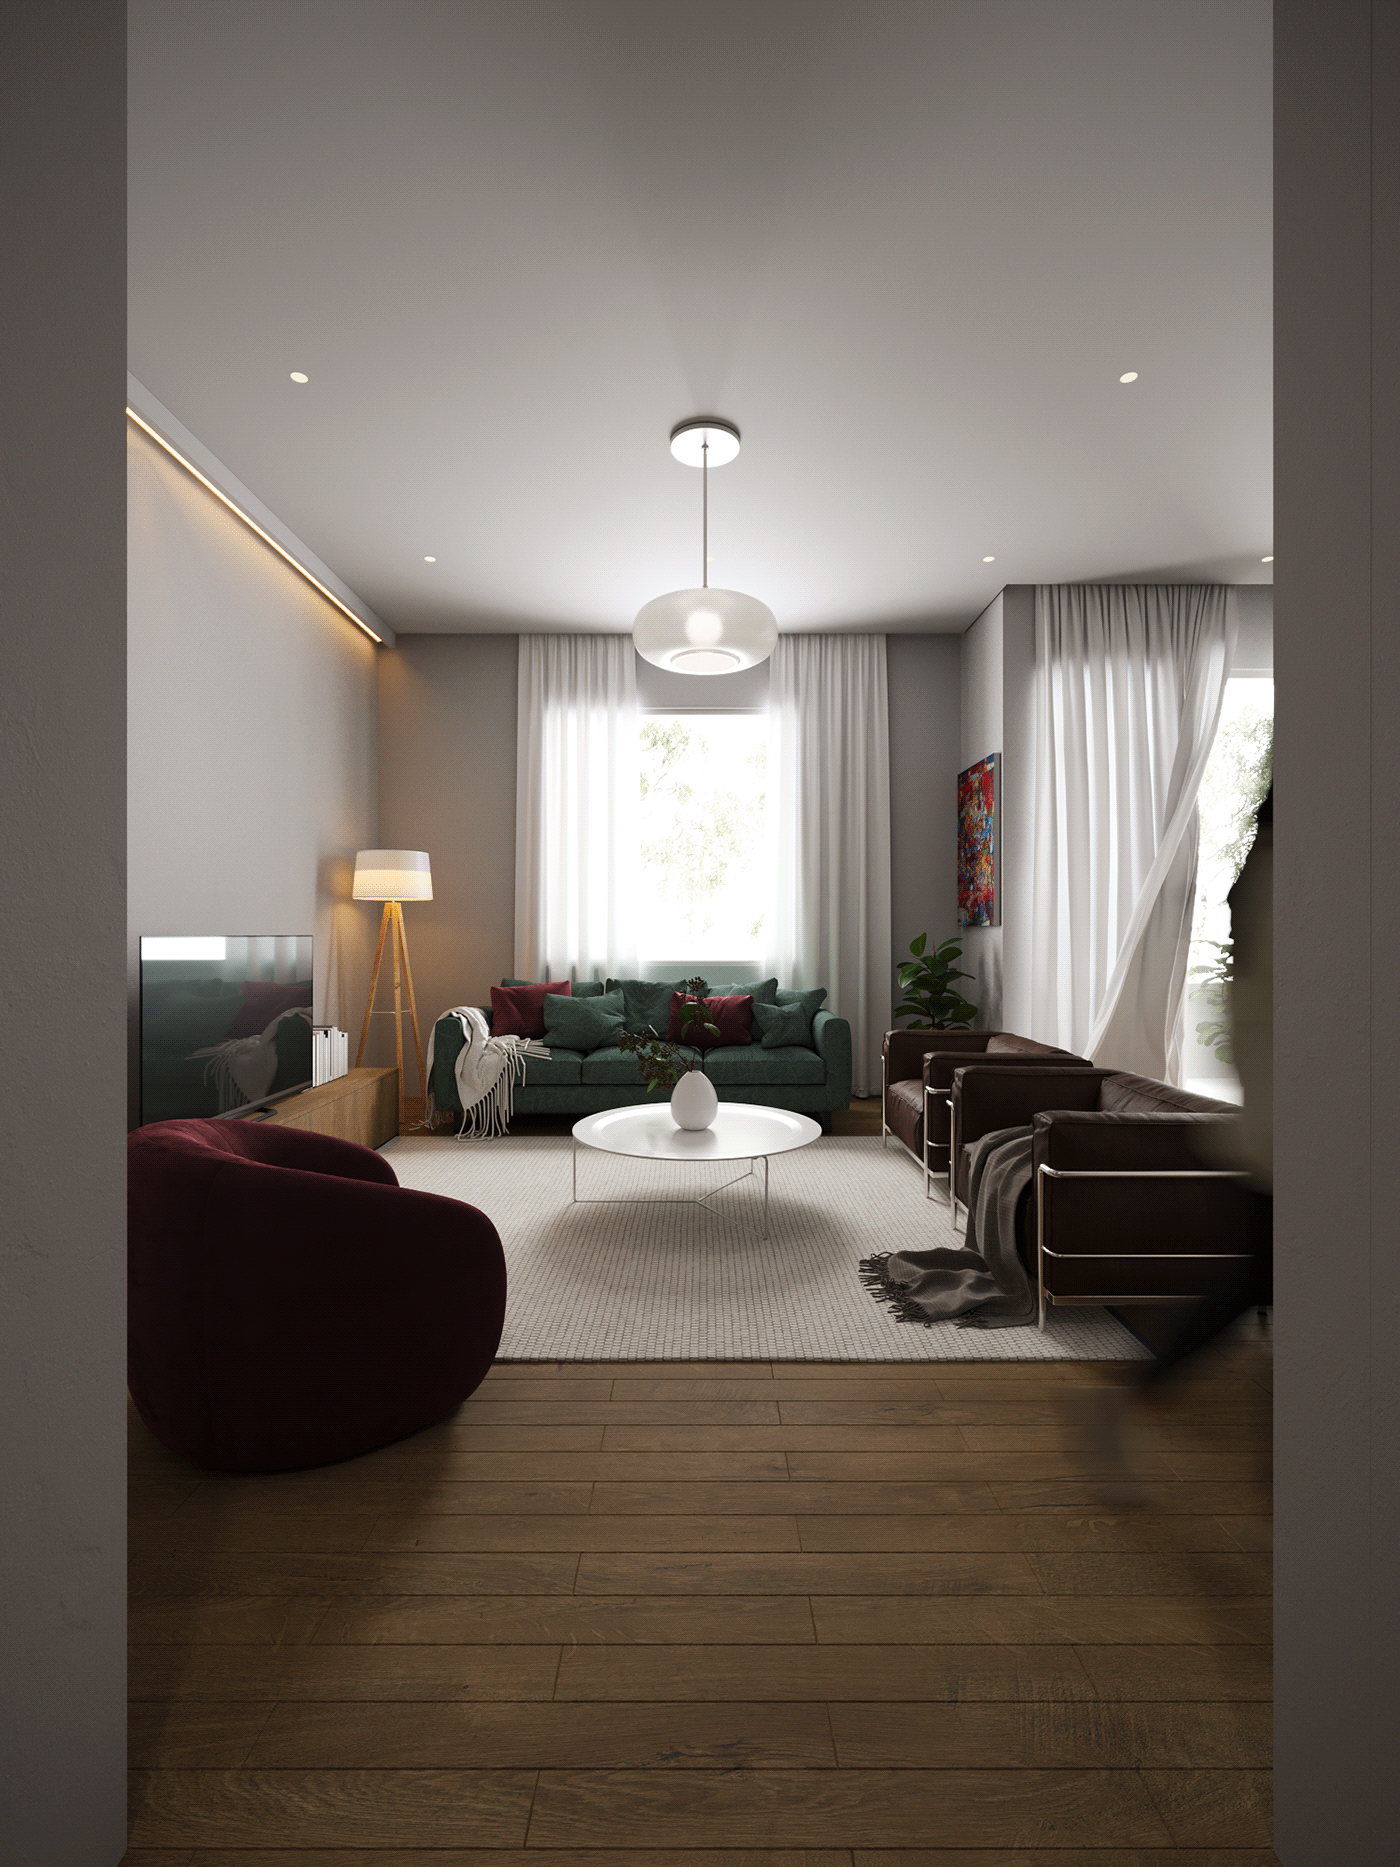 architecture apartment Interior minimalist livingroom